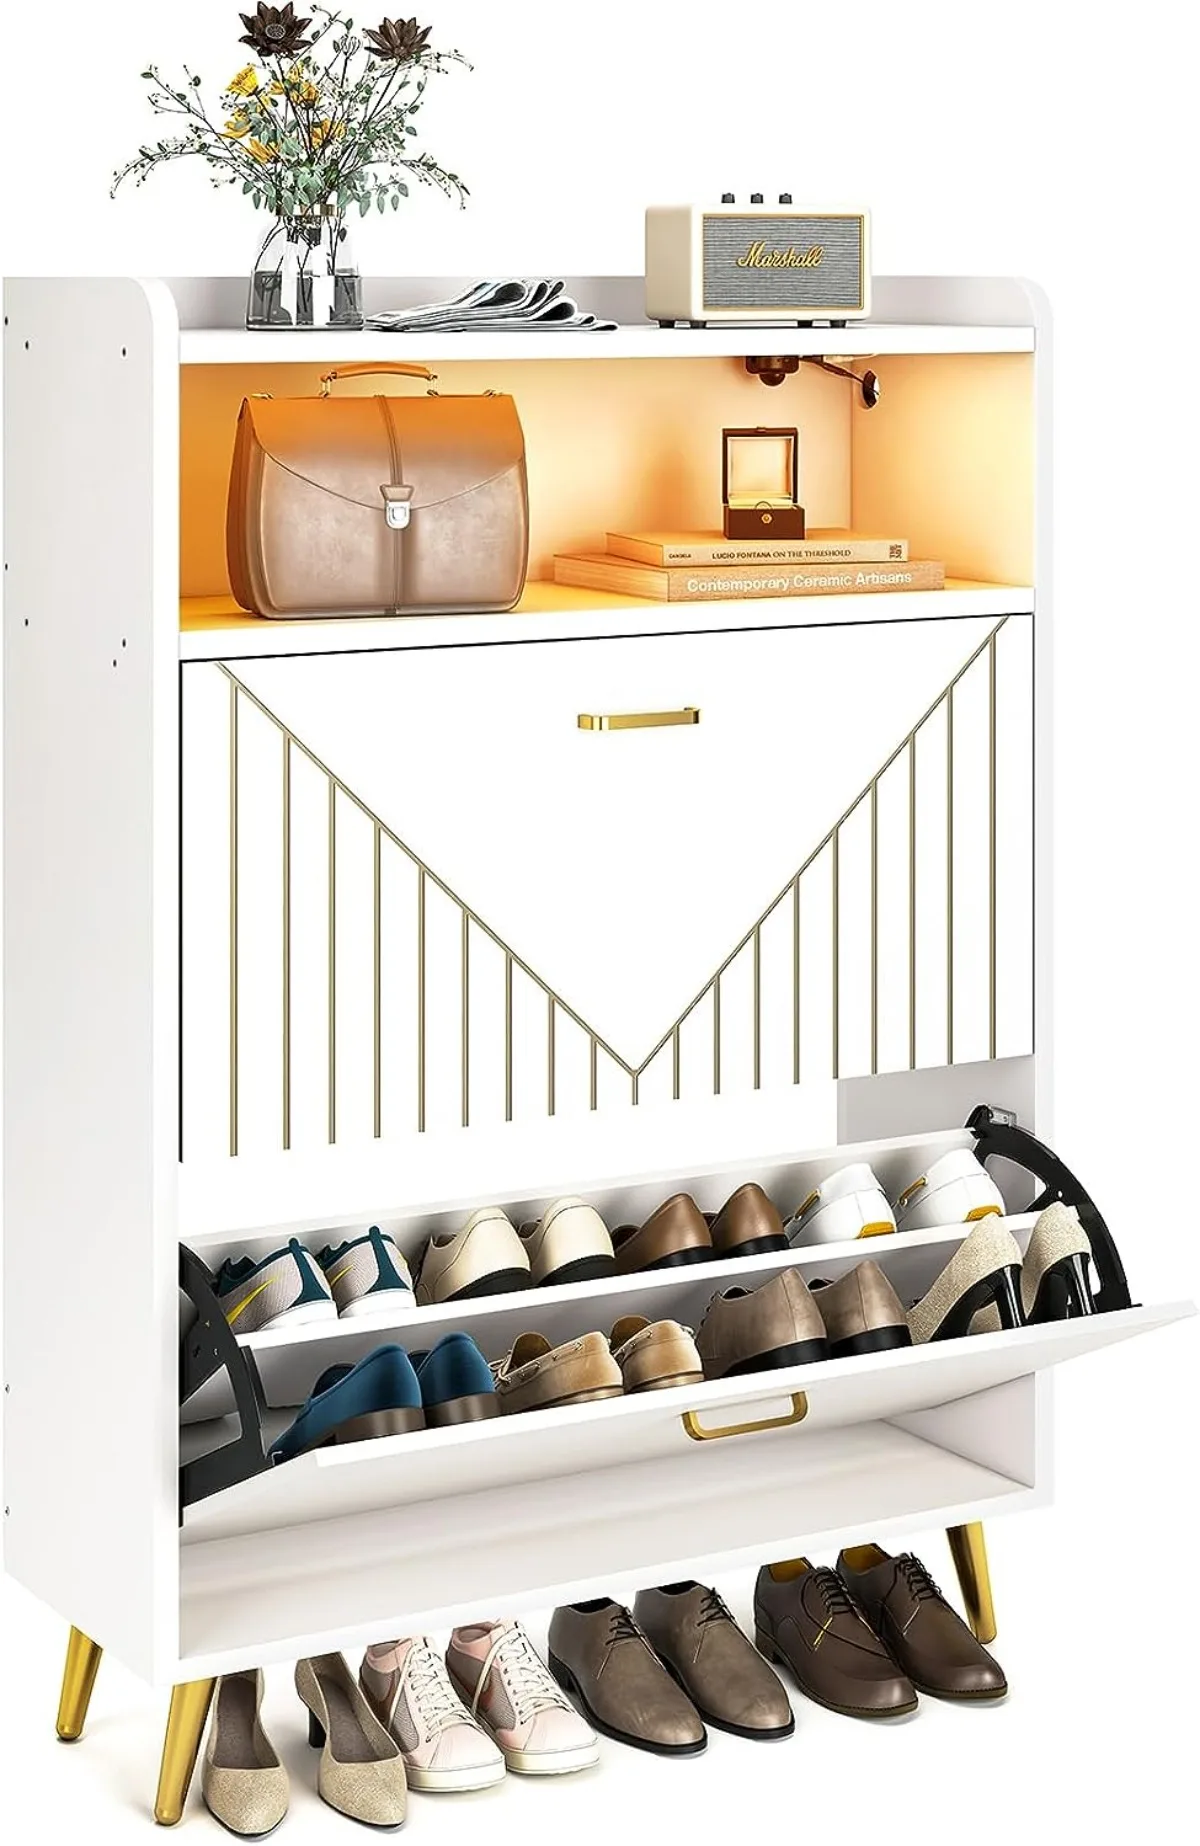 

Шкаф для обуви с откидными дверцами, деревянный отдельно стоящий шкаф для обуви с откидной крышкой и открытыми полками для шкафа, гостиной, белый